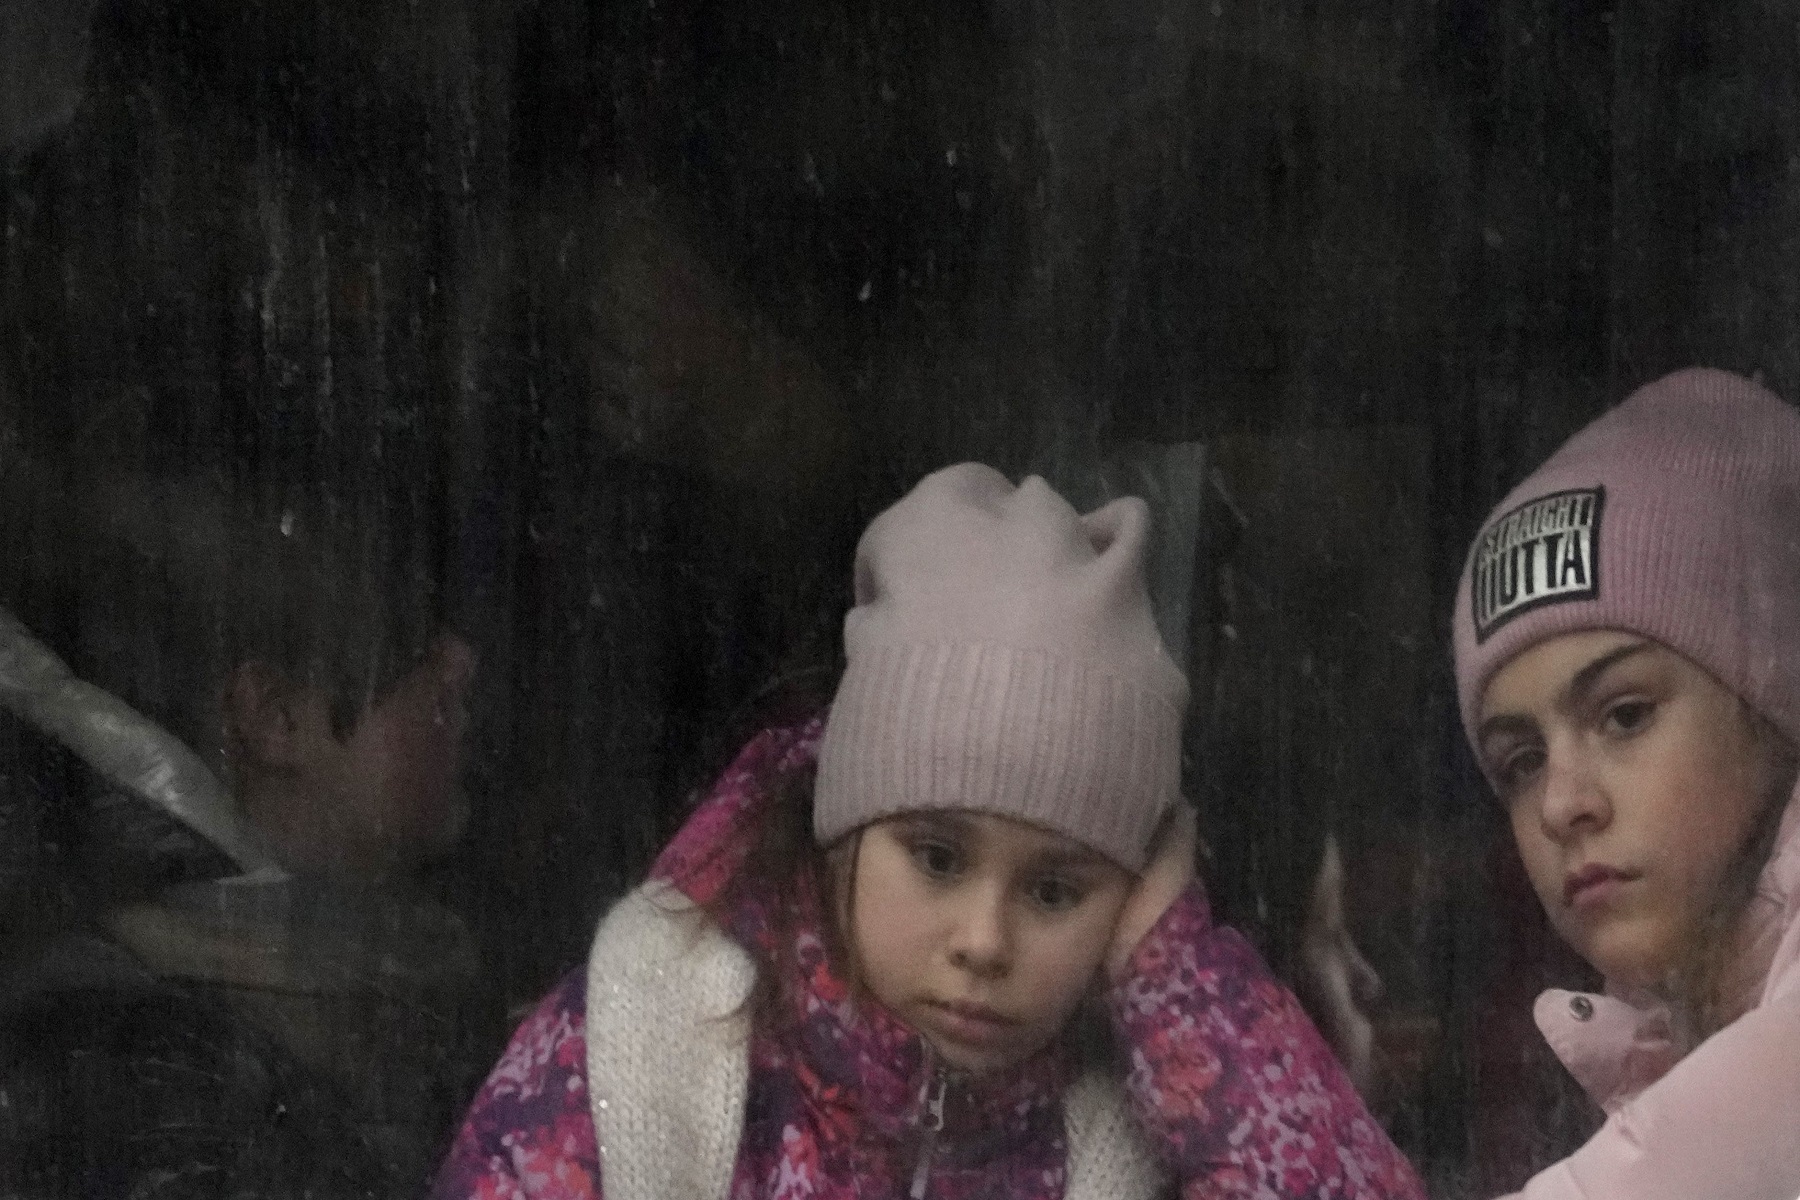 Παιδιά Ουκρανία: Αντιμετωπίζουν αποπροσανατολισμό και εκμετάλλευση κατά τη διάρκεια της διαδρομής από το σπίτι